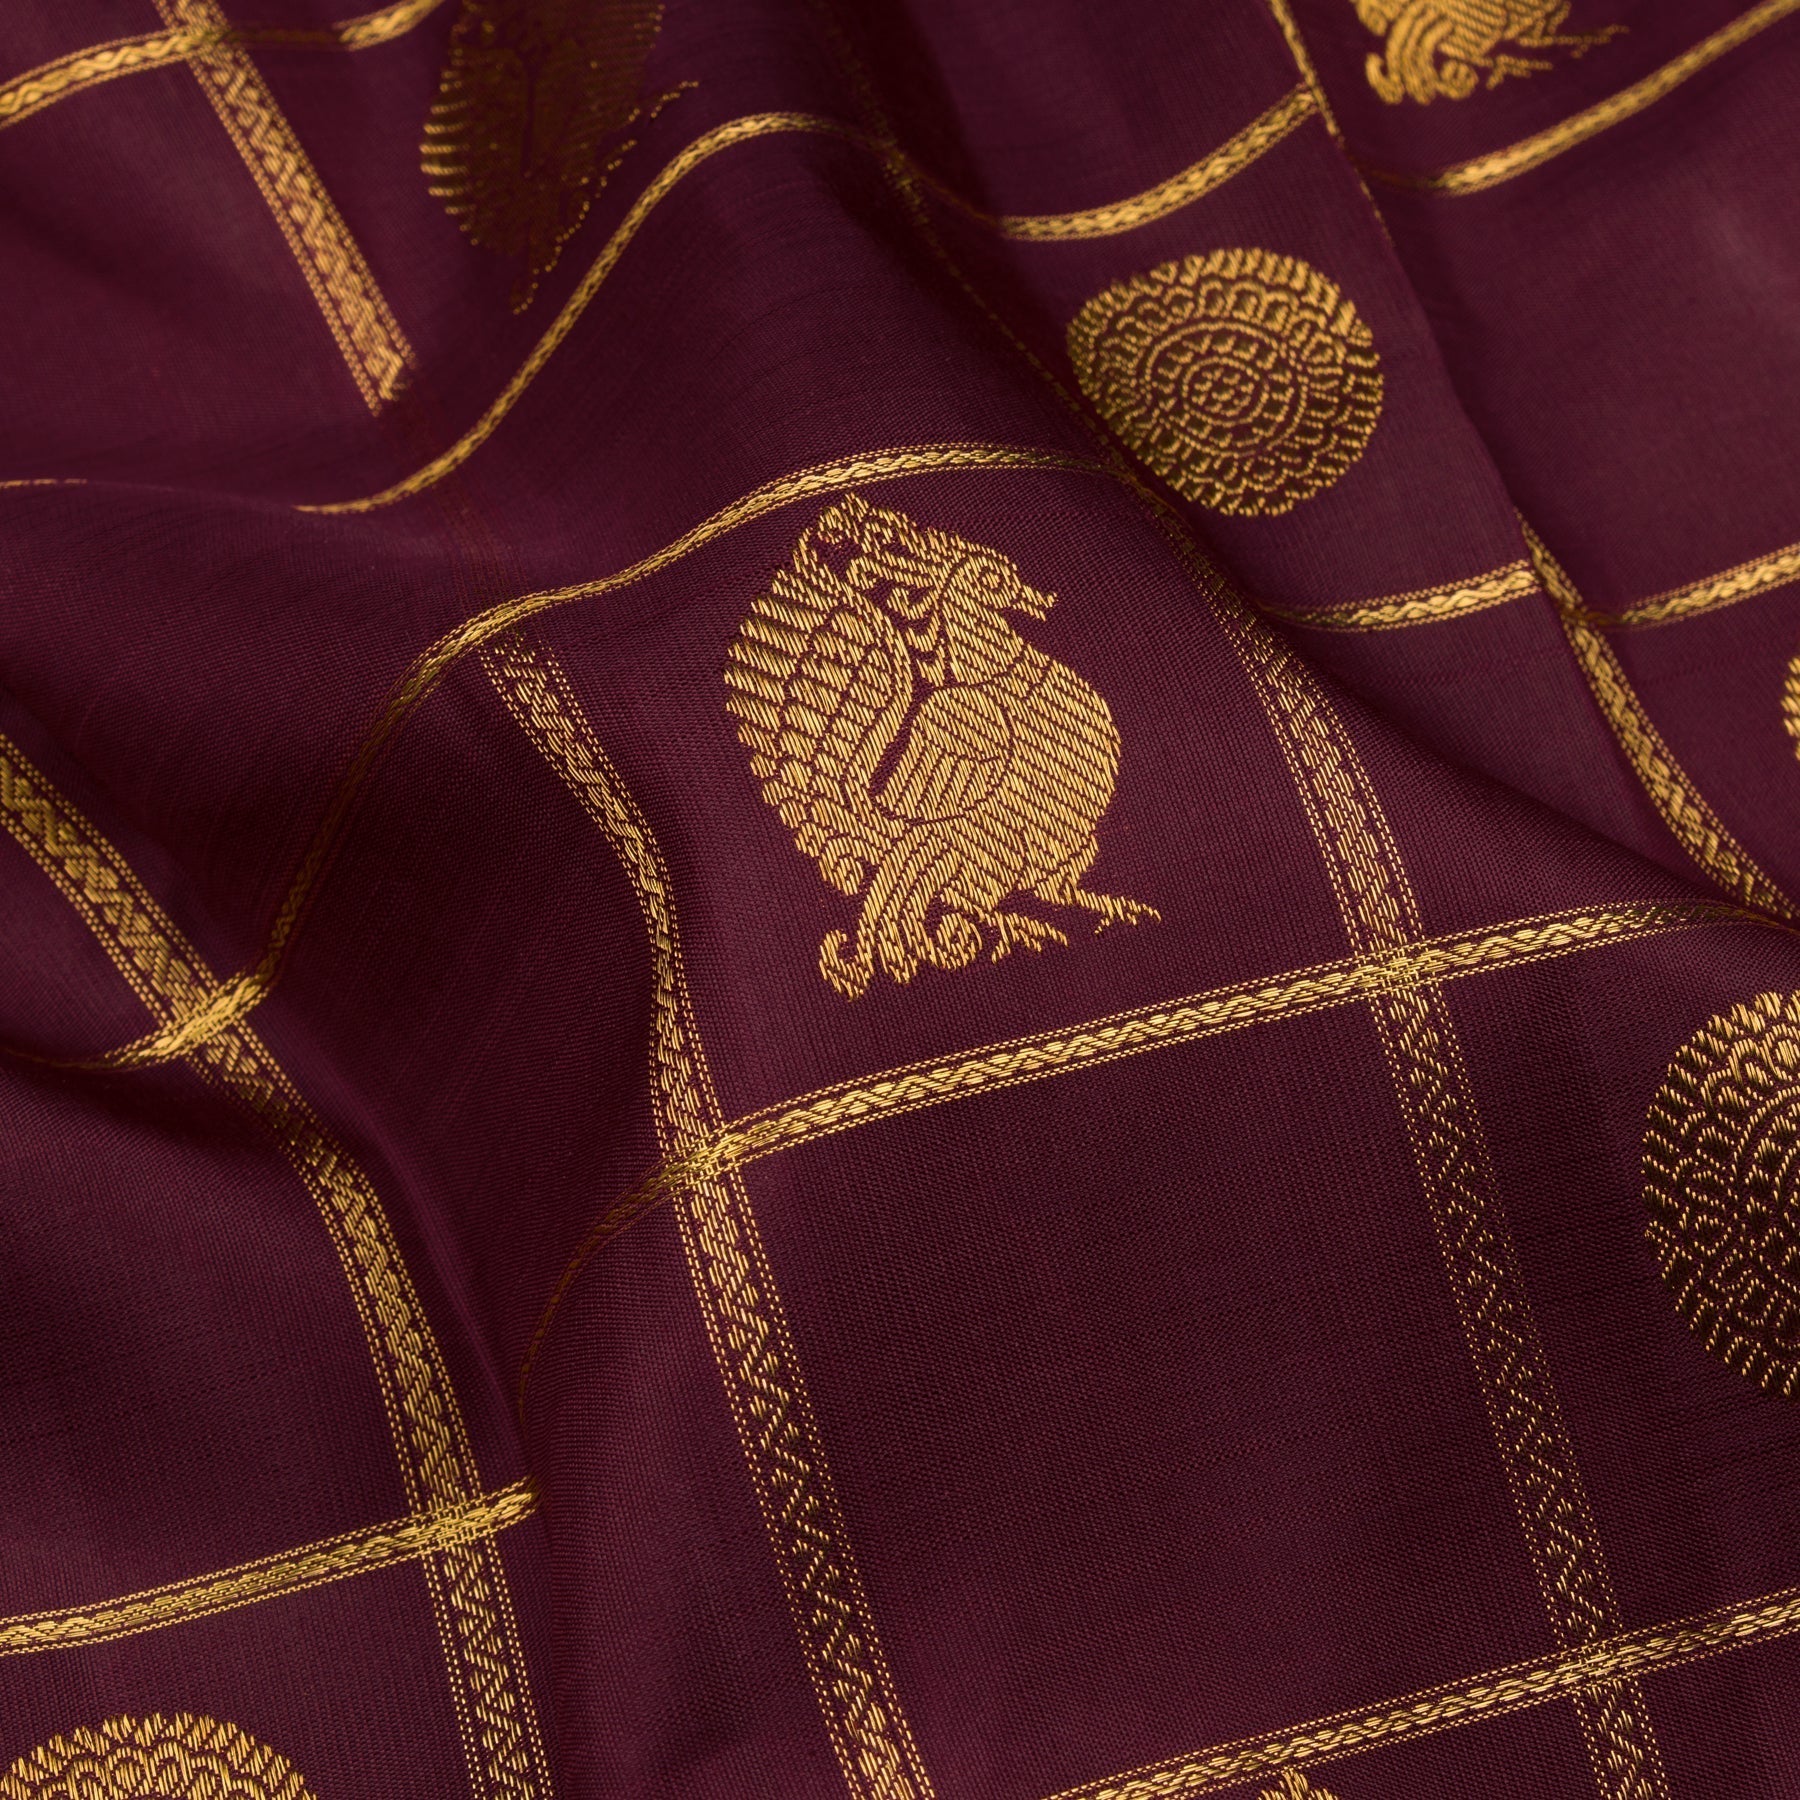 Kanakavalli Kanjivaram Silk Sari 22-599-HS001-07190 - Fabric View